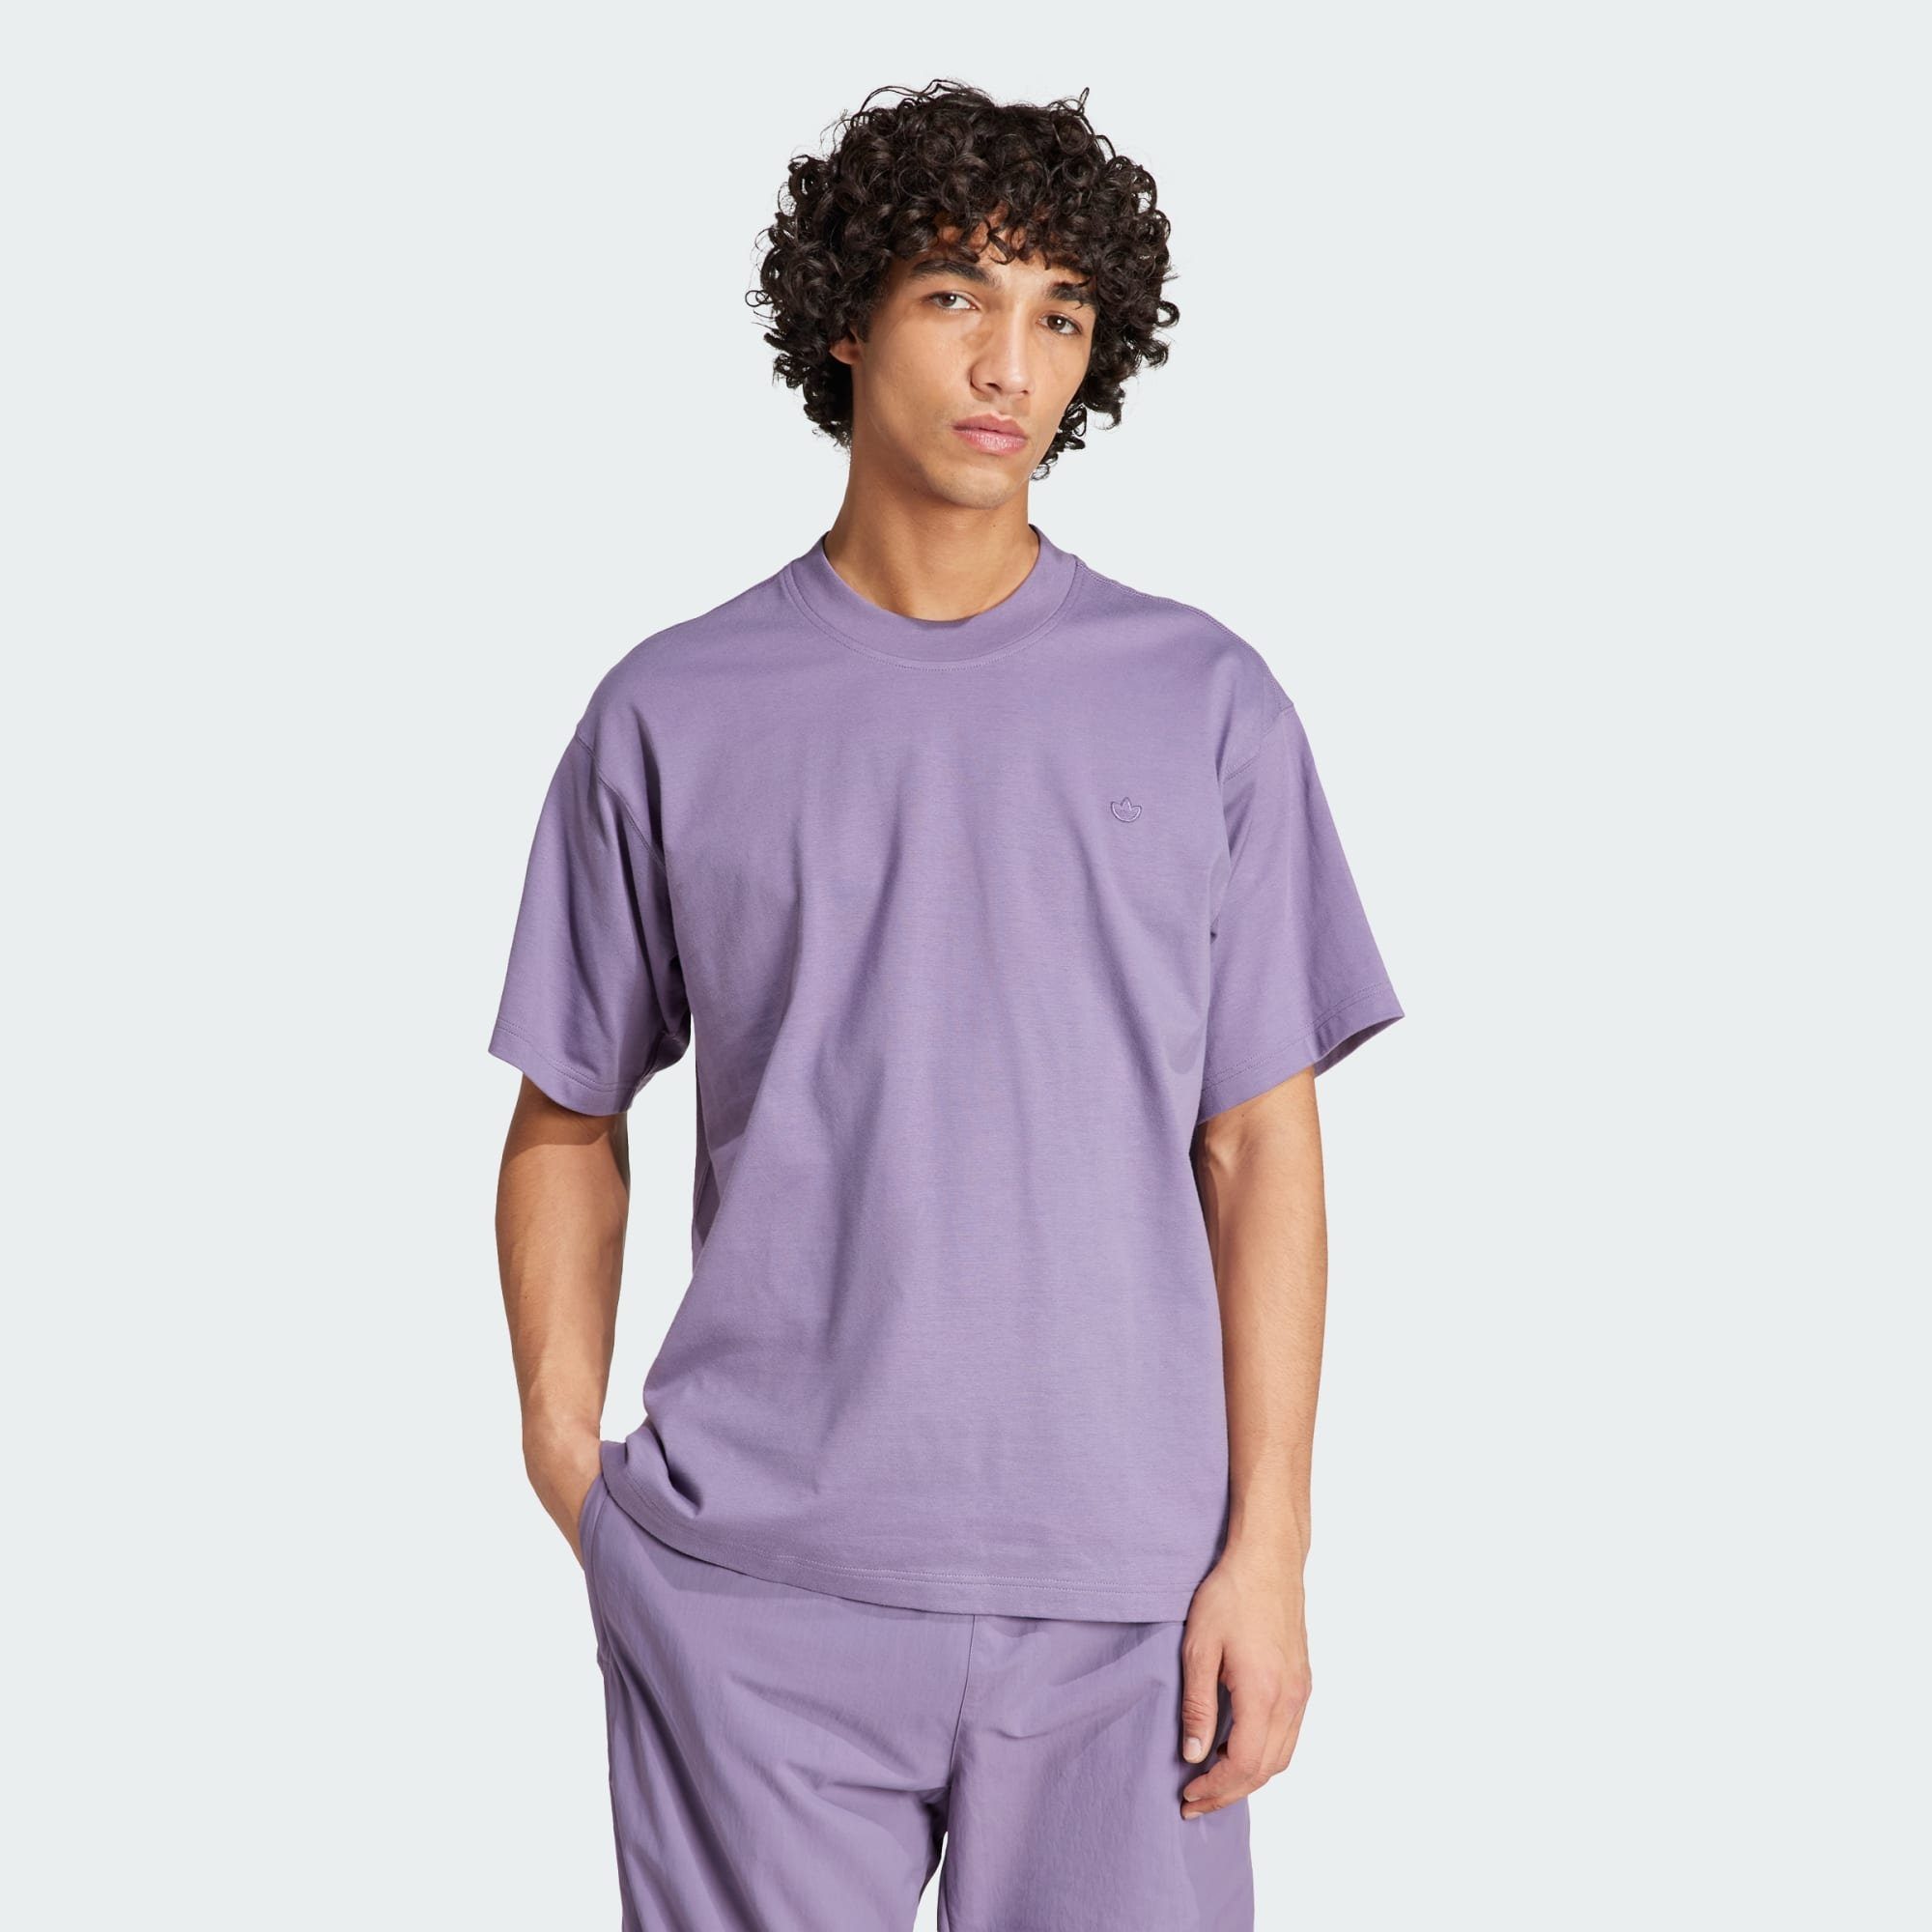 ADICOLOR T-Shirt adidas Violet Originals Shadow T-SHIRT CONTEMPO